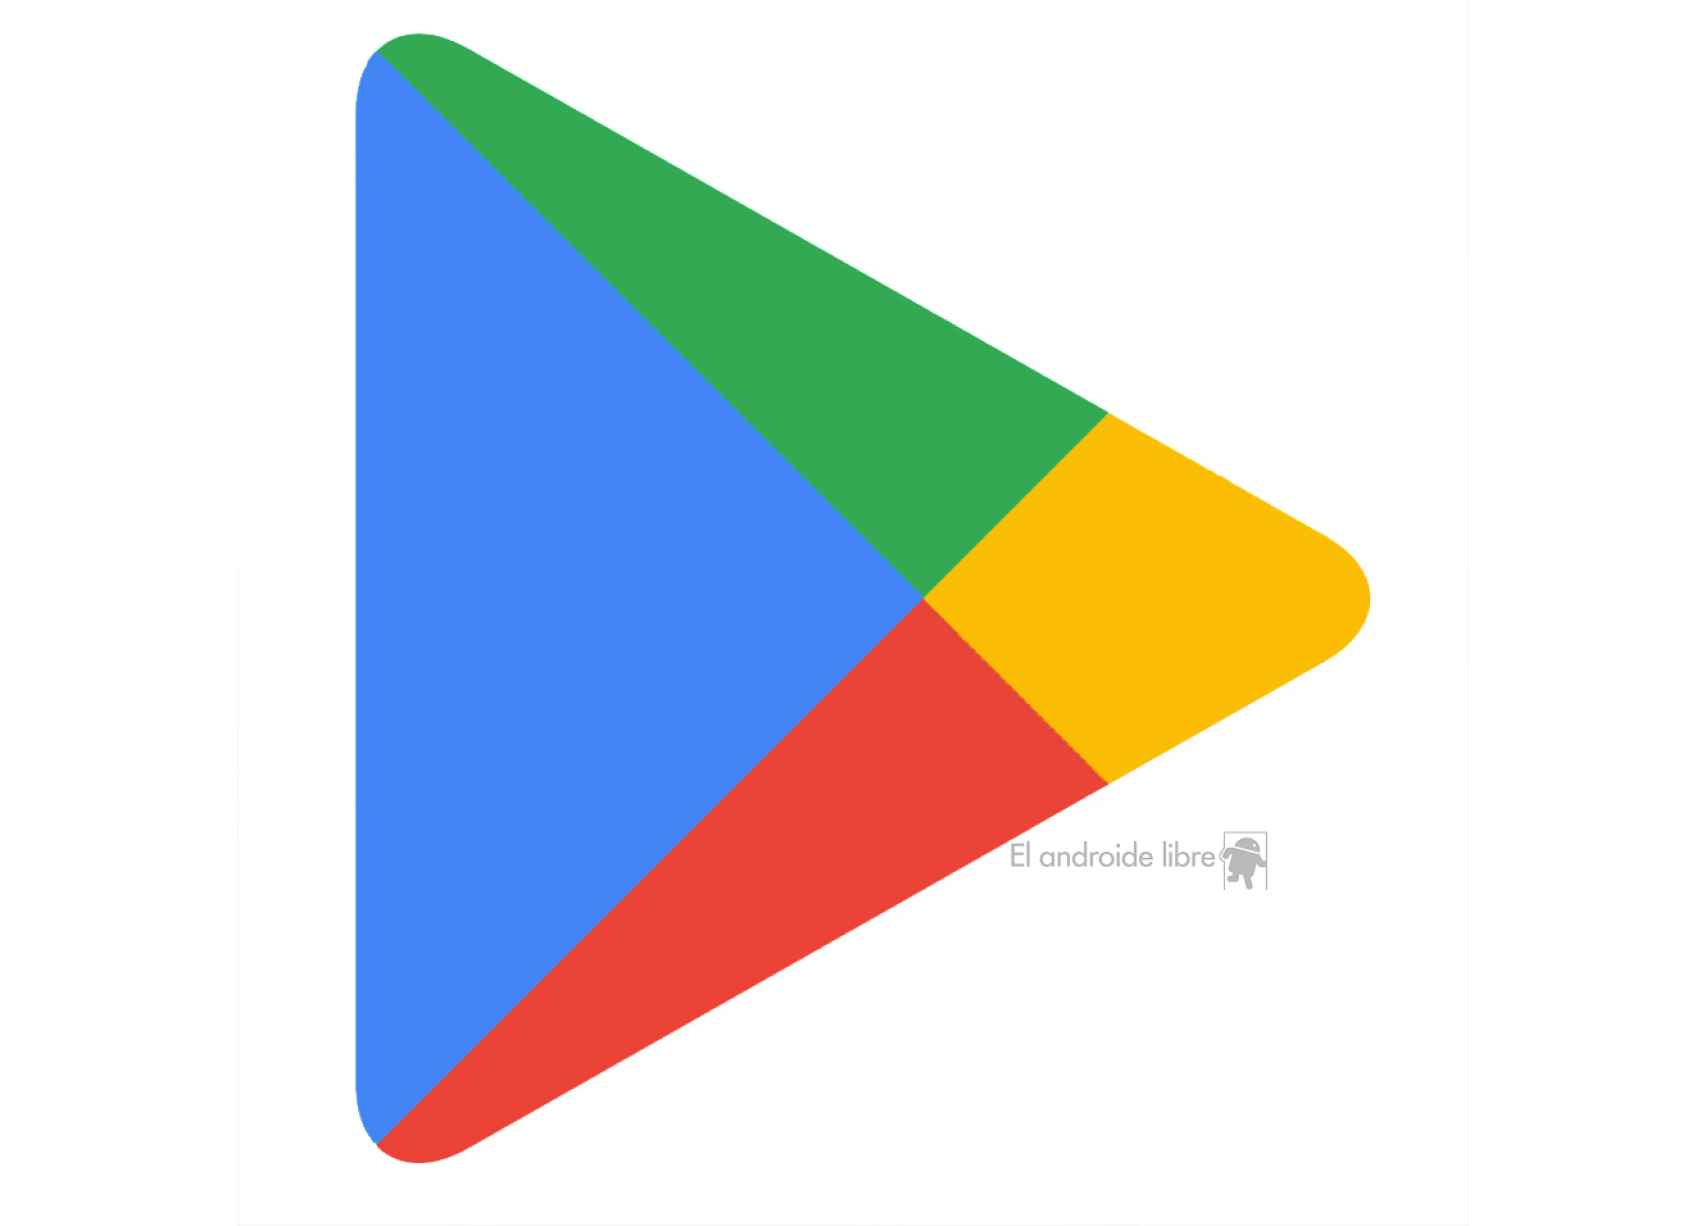 Recreación del logo de Google Play con los nuevos colores